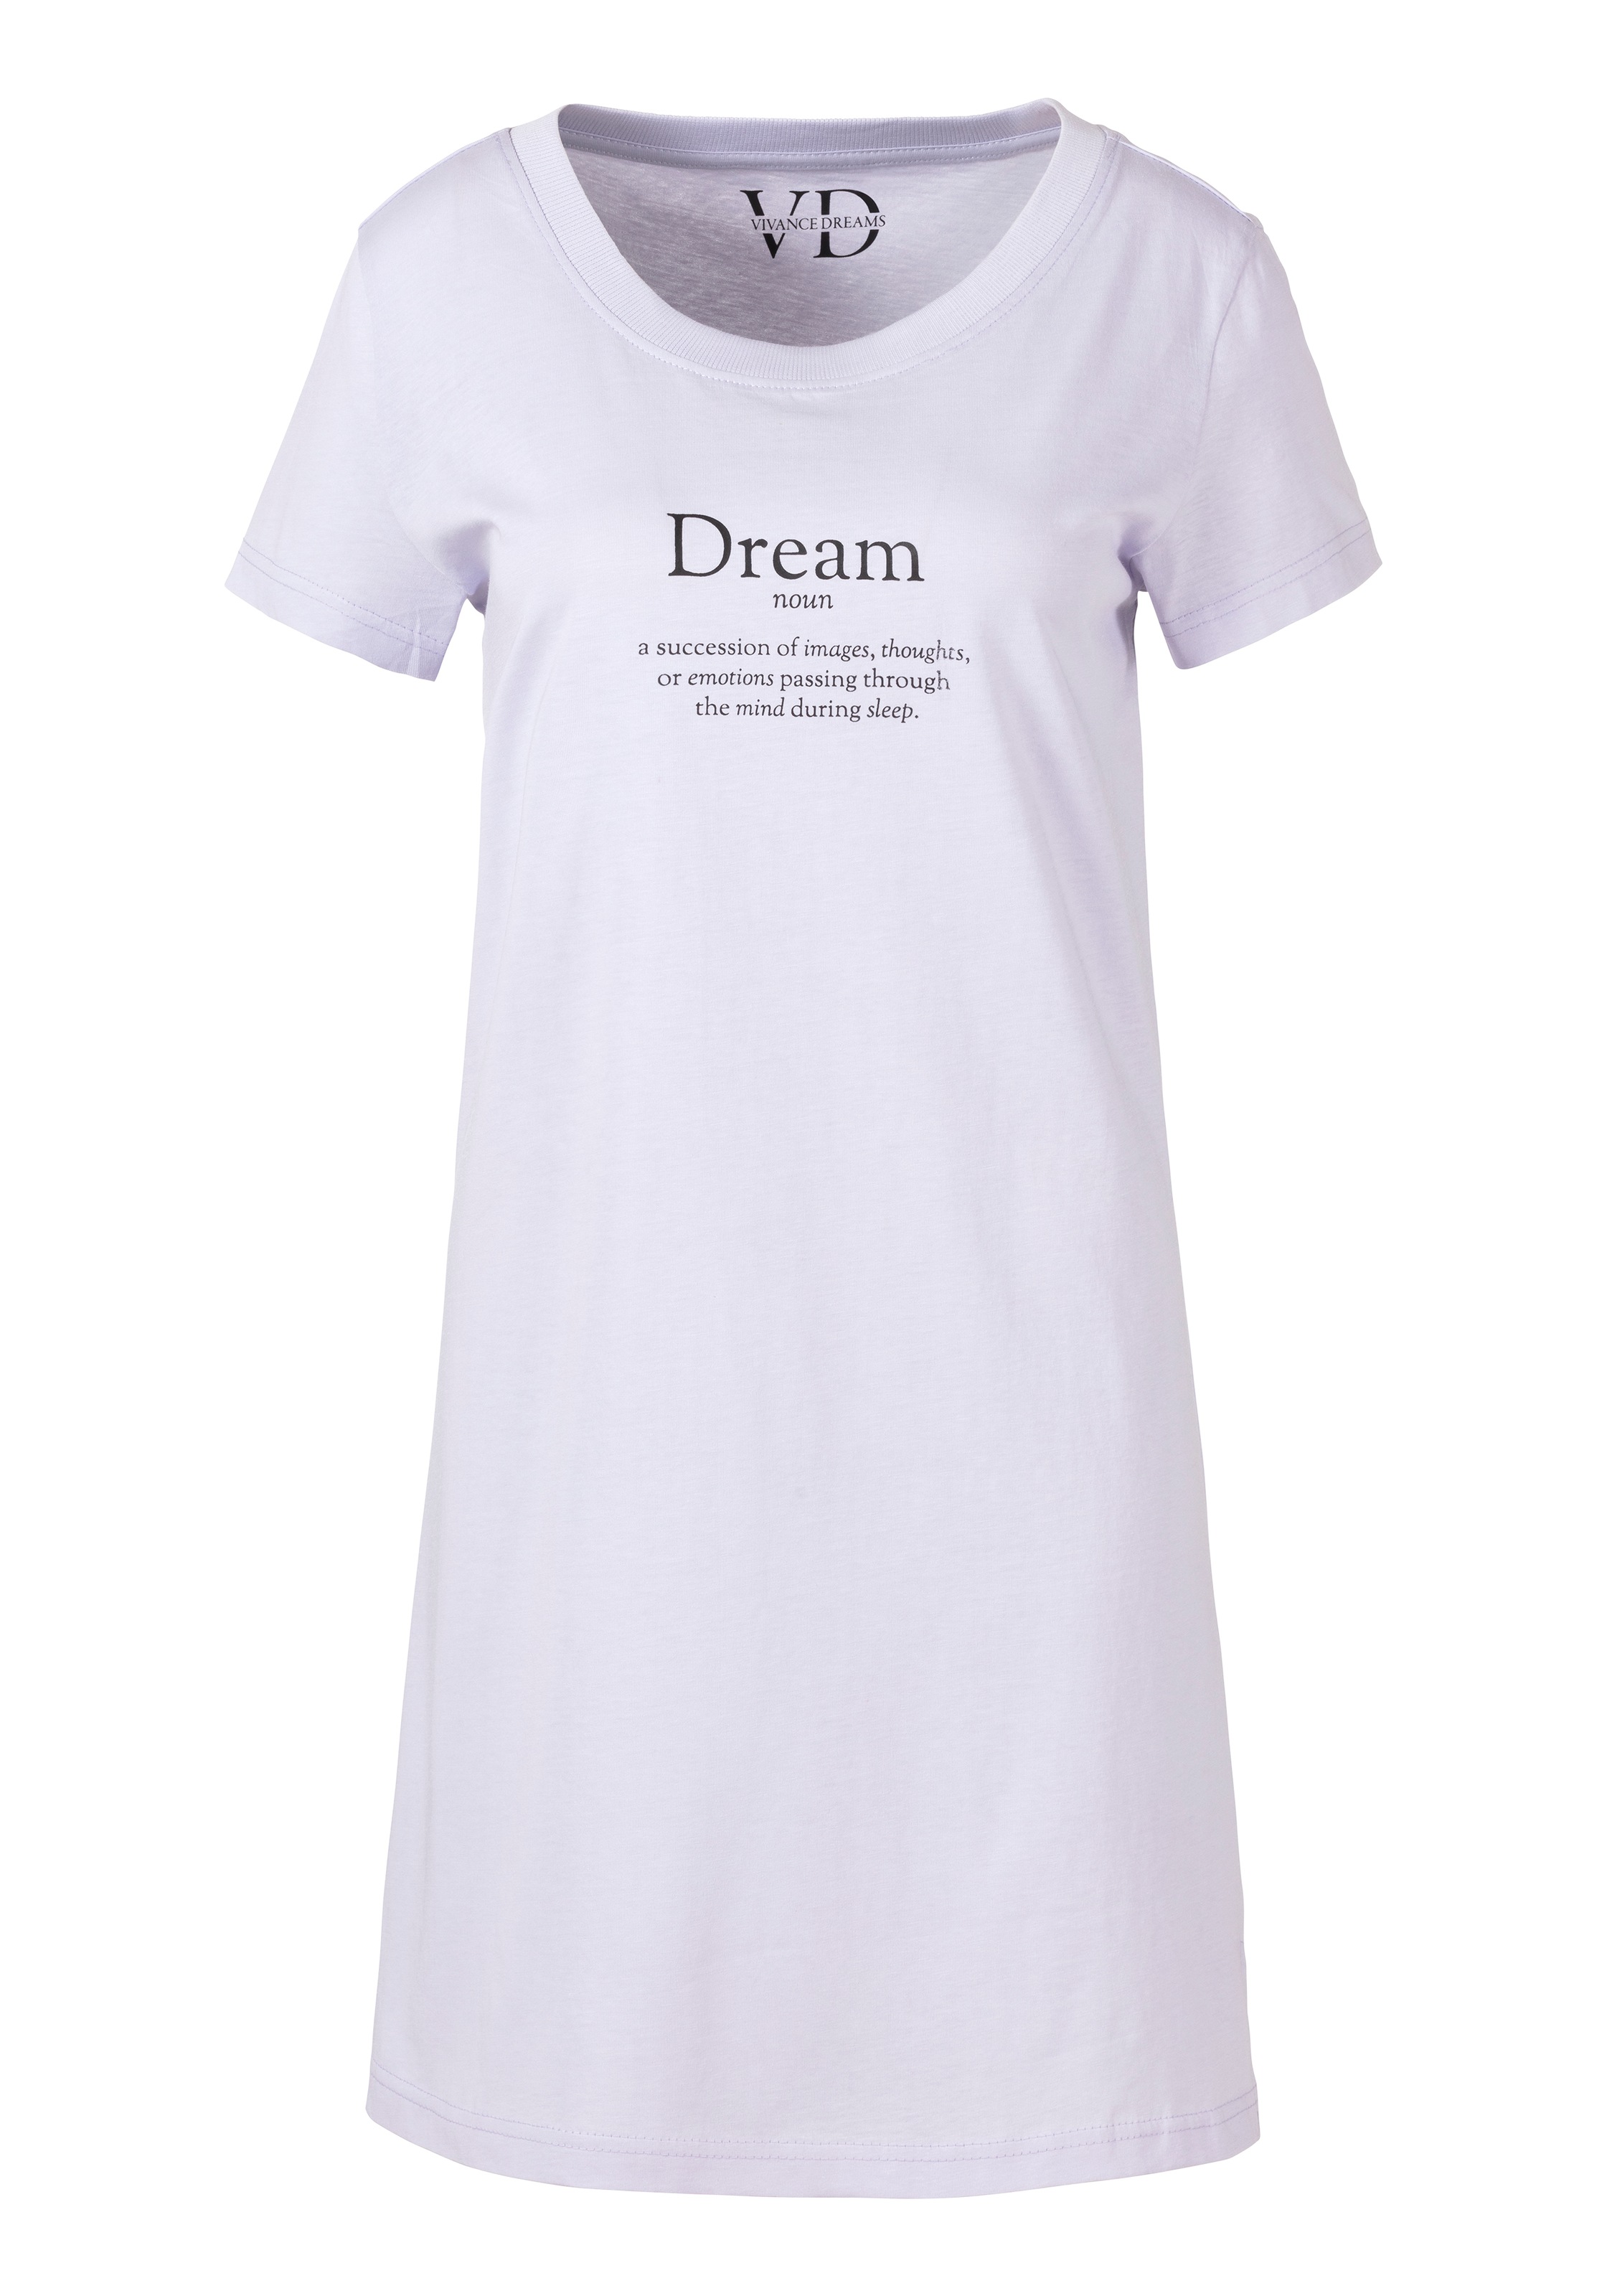 Vivance Dreams Nachthemd, mit Statementdruck